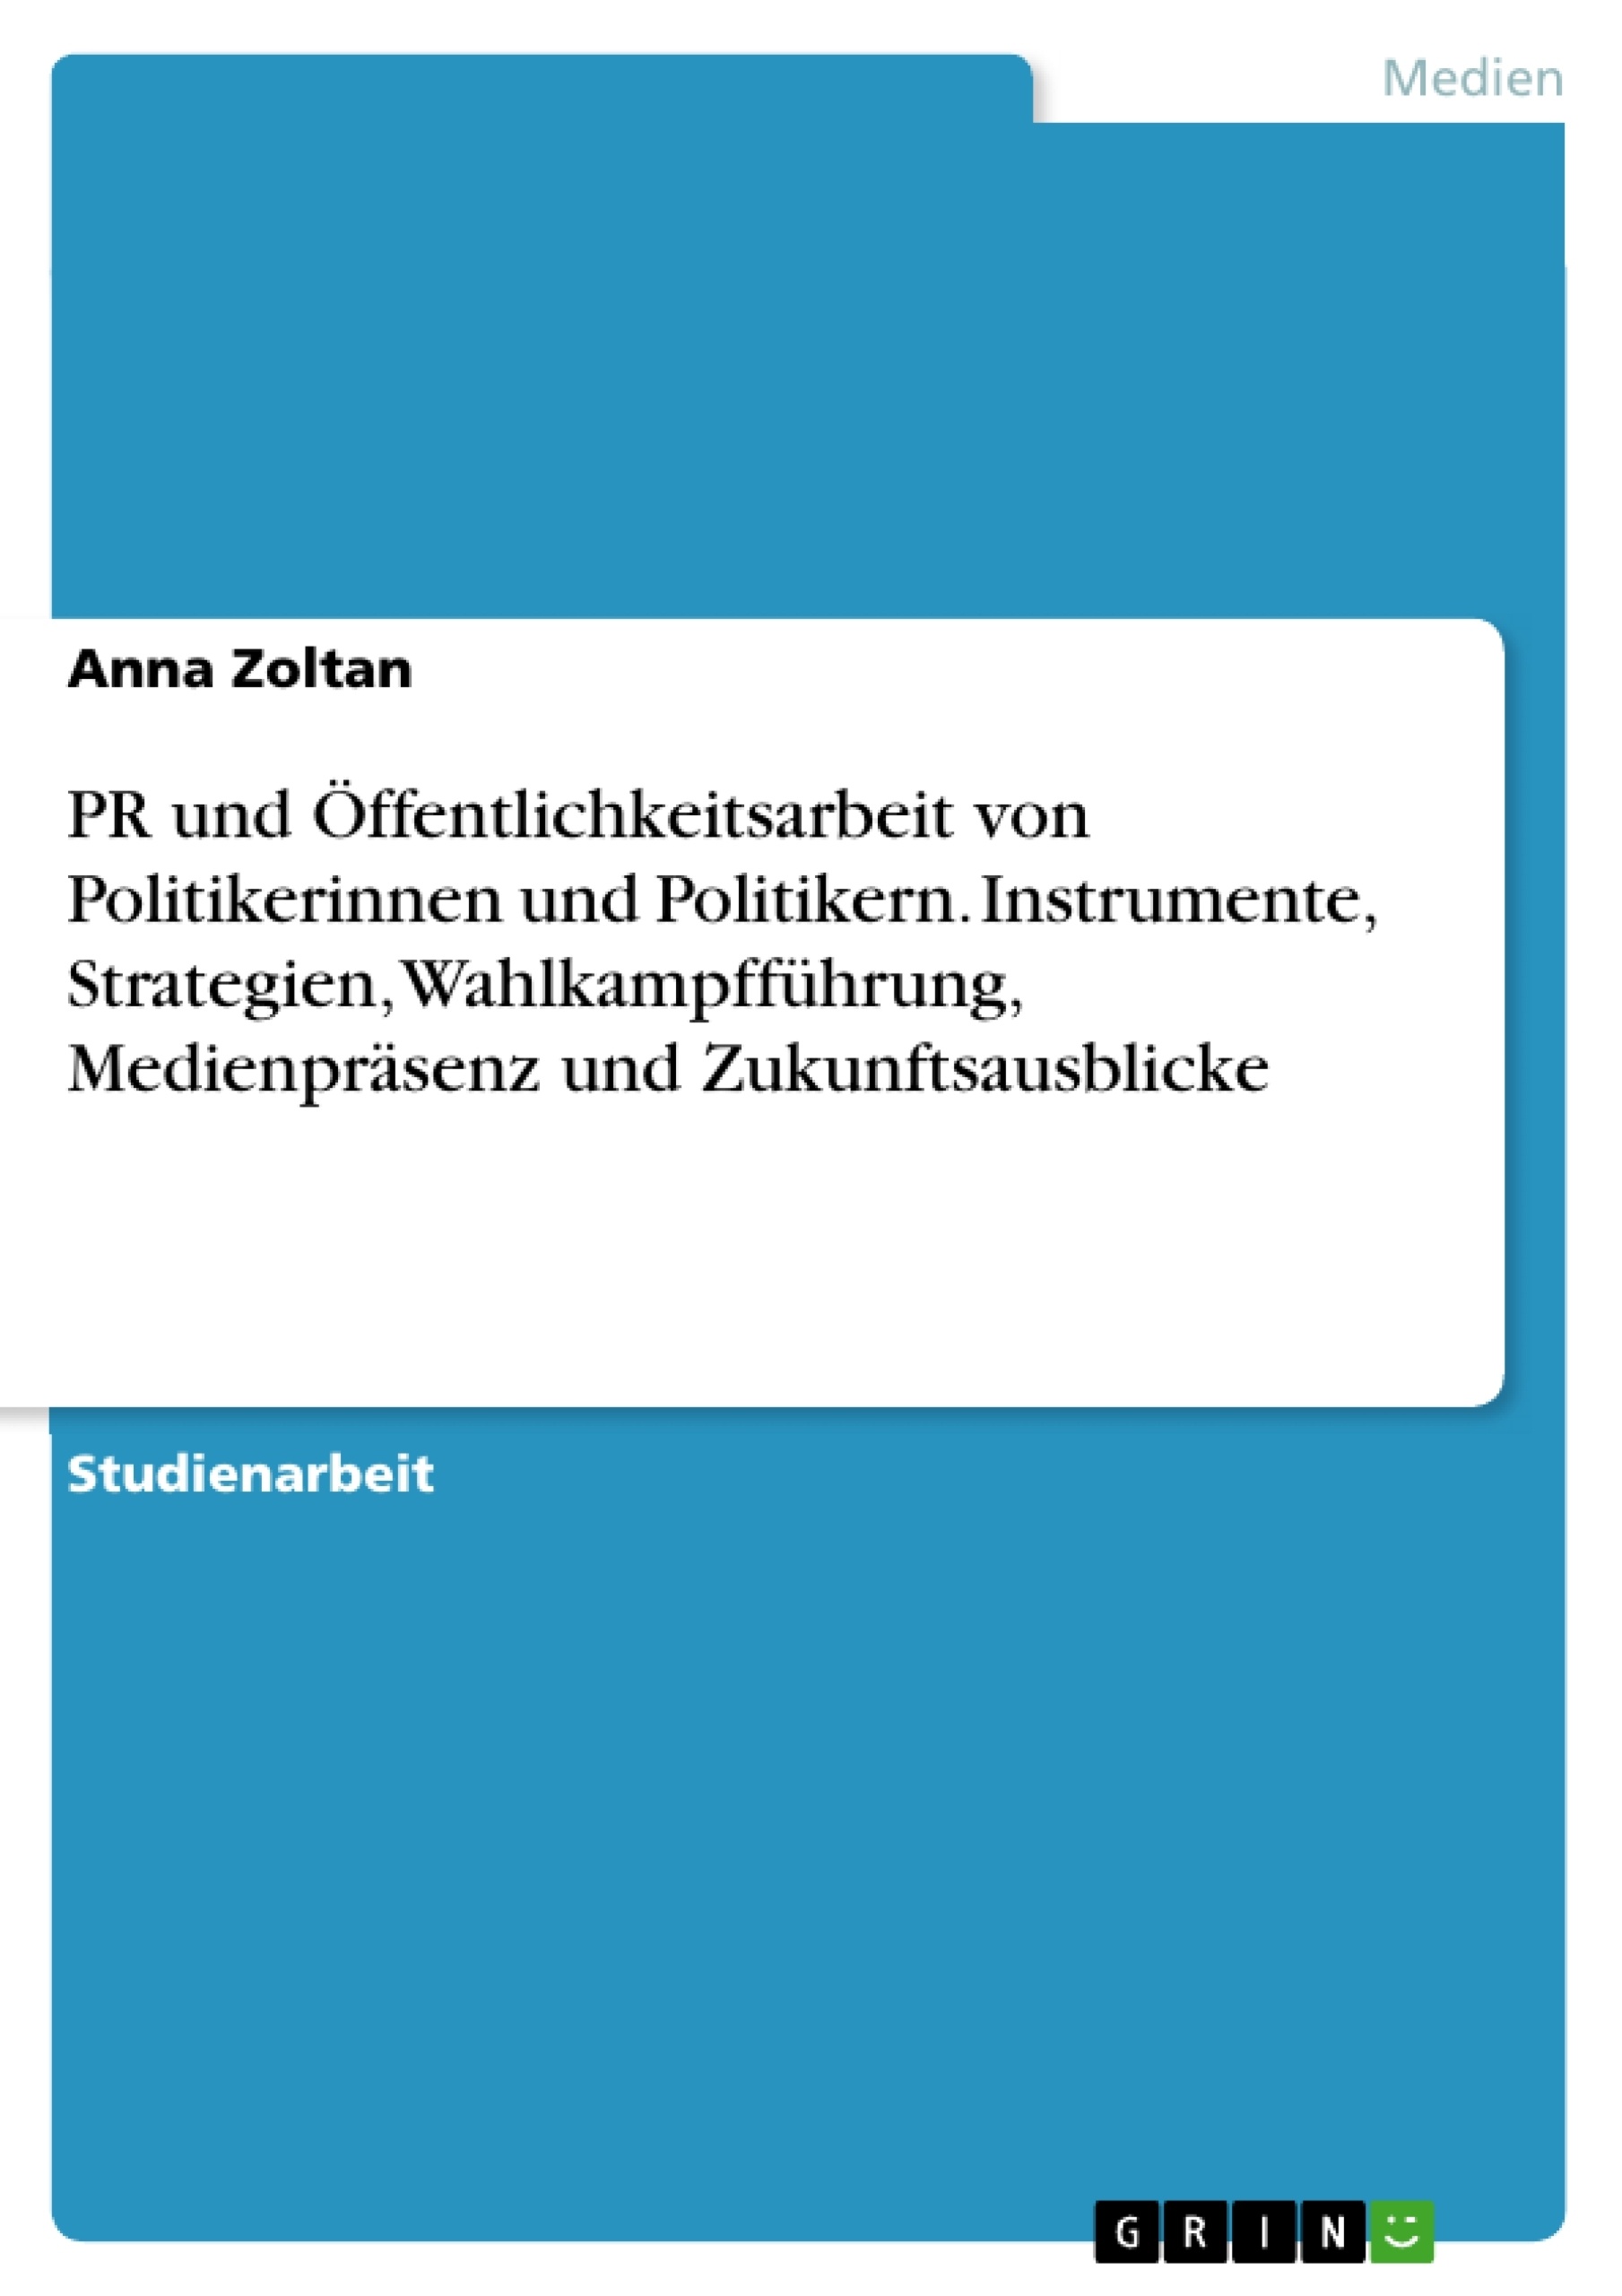 Titre: PR und Öffentlichkeitsarbeit von Politikerinnen und Politikern. Instrumente, Strategien, Wahlkampfführung, Medienpräsenz und Zukunftsausblicke